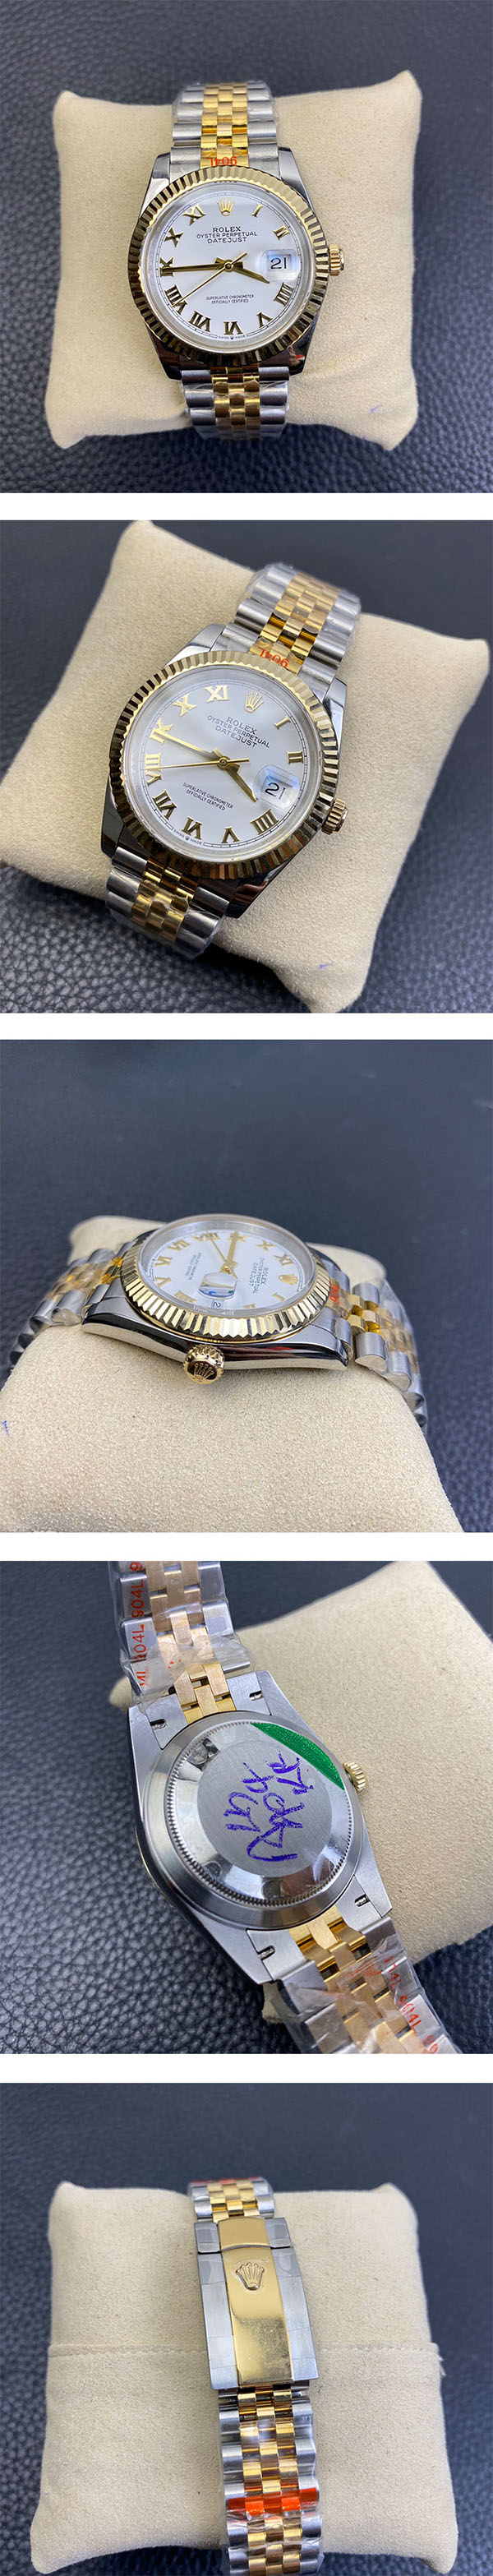 【希少新作】【36mm】ロレックス デイトジャスト126233 メンズ腕時計